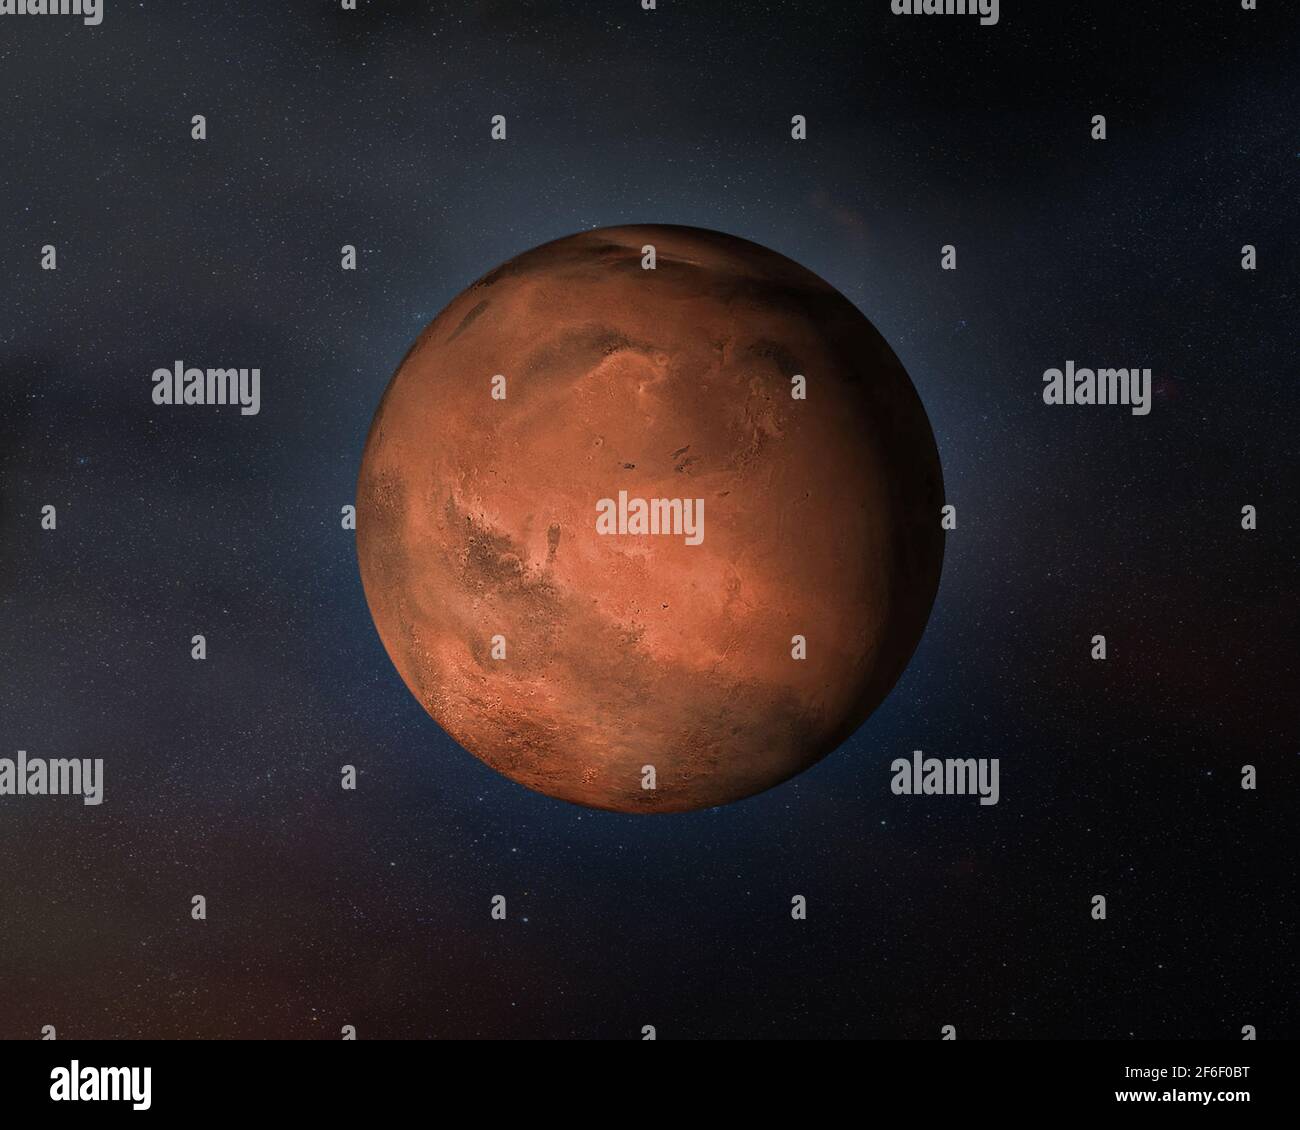 Vista del planeta Marte en el espacio exterior. Elementos de esta imagen proporcionados por la NASA. Foto de stock